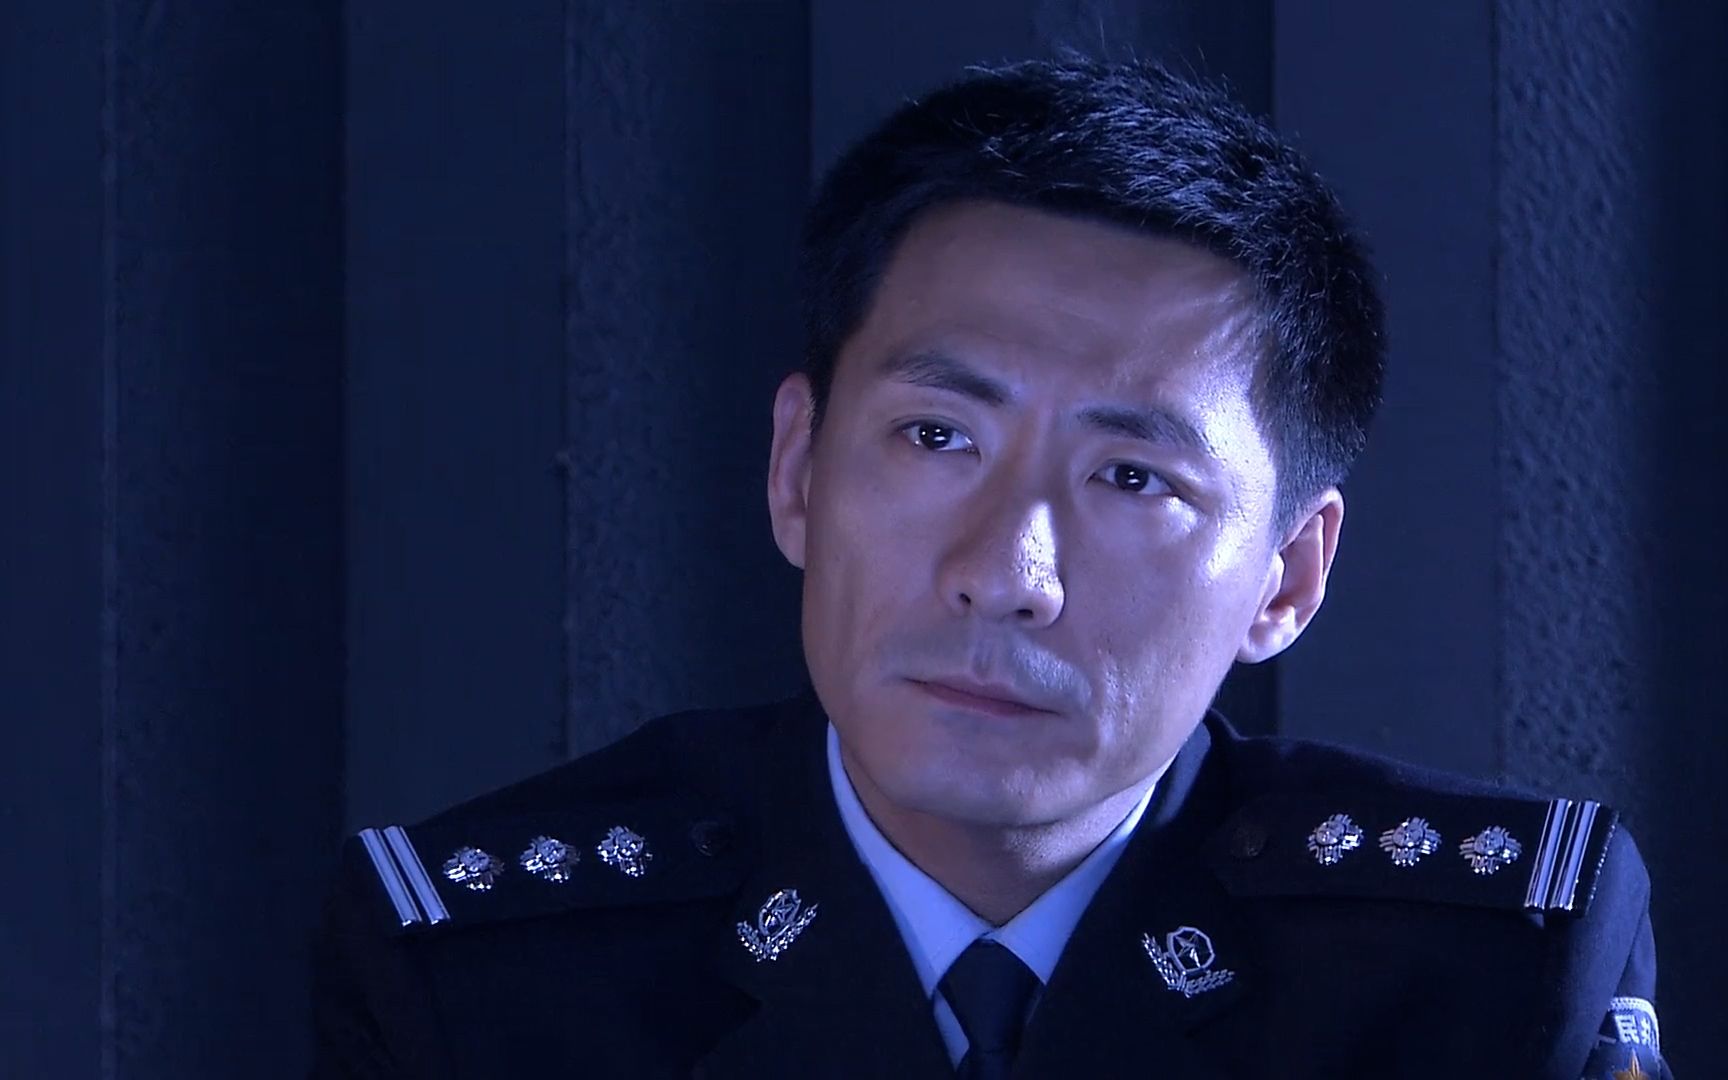 燕双鹰(张子健)在影视剧中饰演的警察